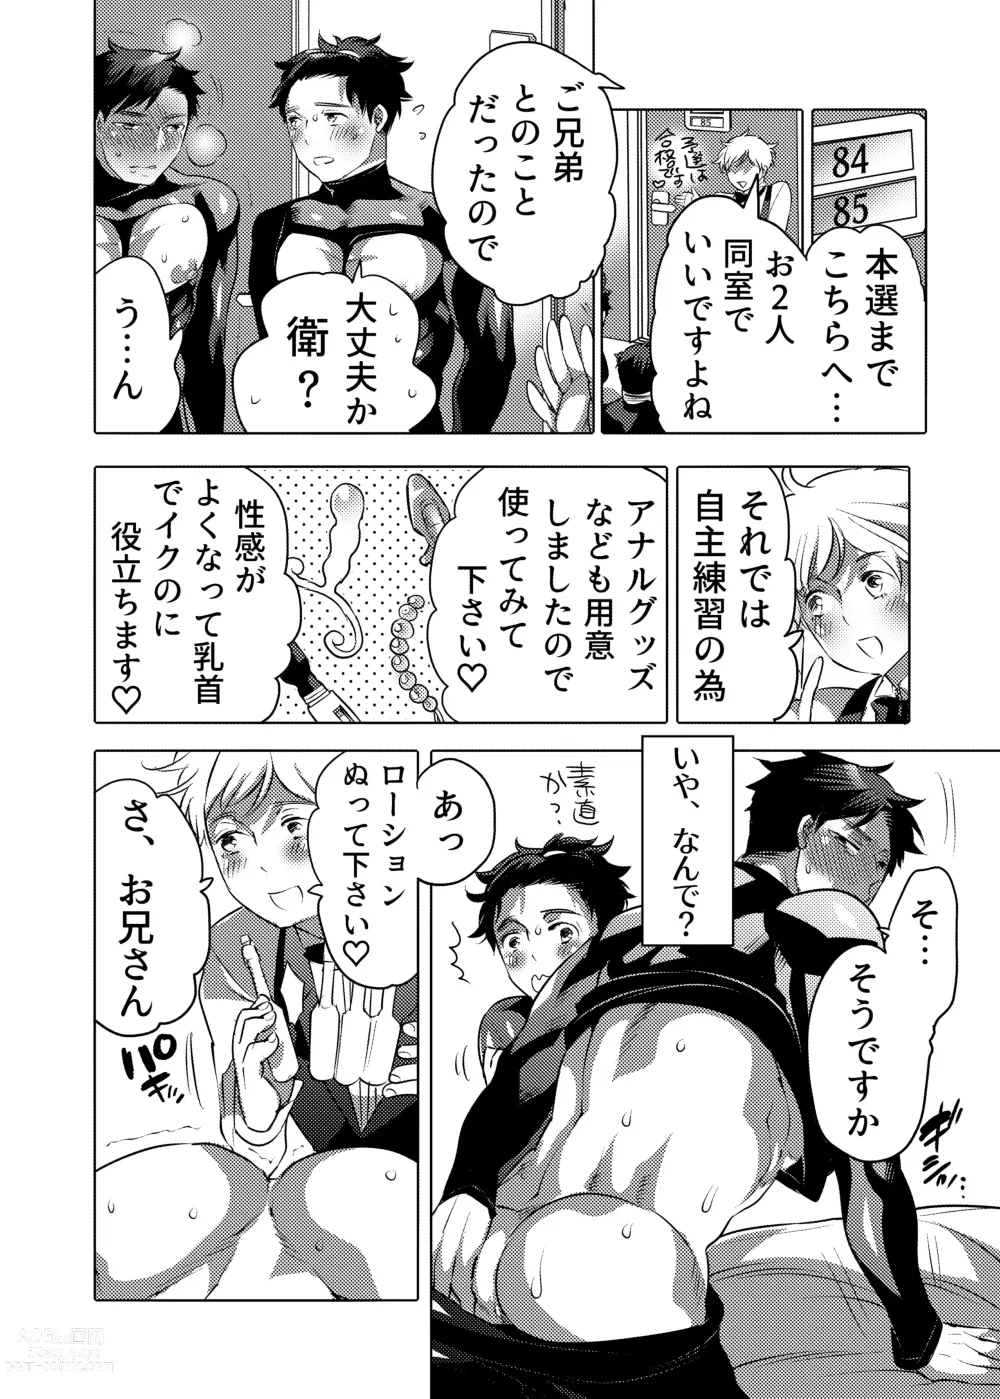 Page 14 of doujinshi Ochichi Hinpyoukai